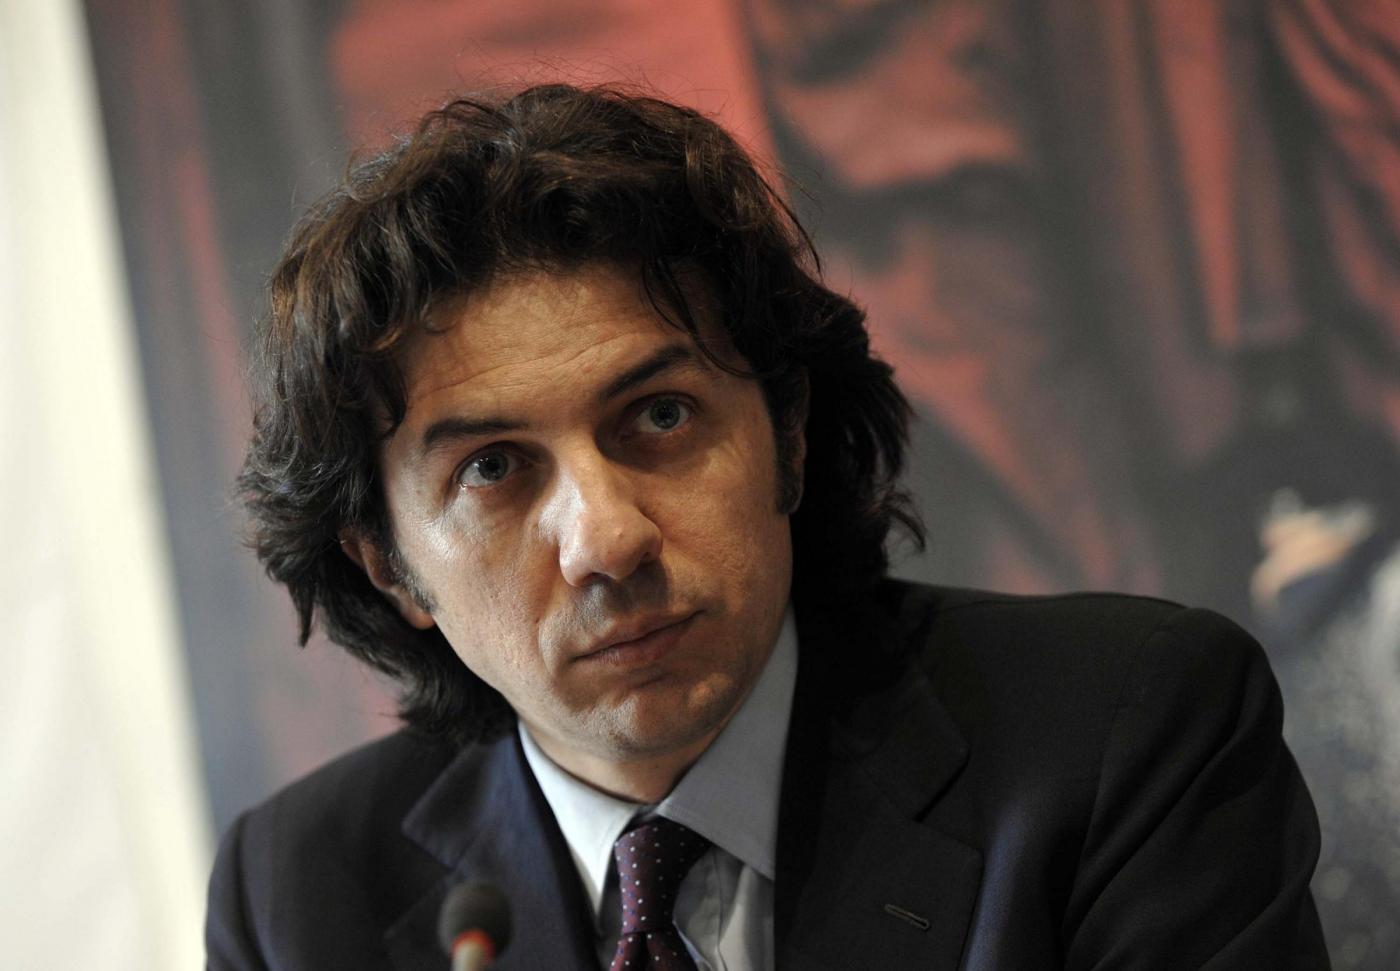 Conferenza stampa dei Radicali Italiani per la legge sul fine vita